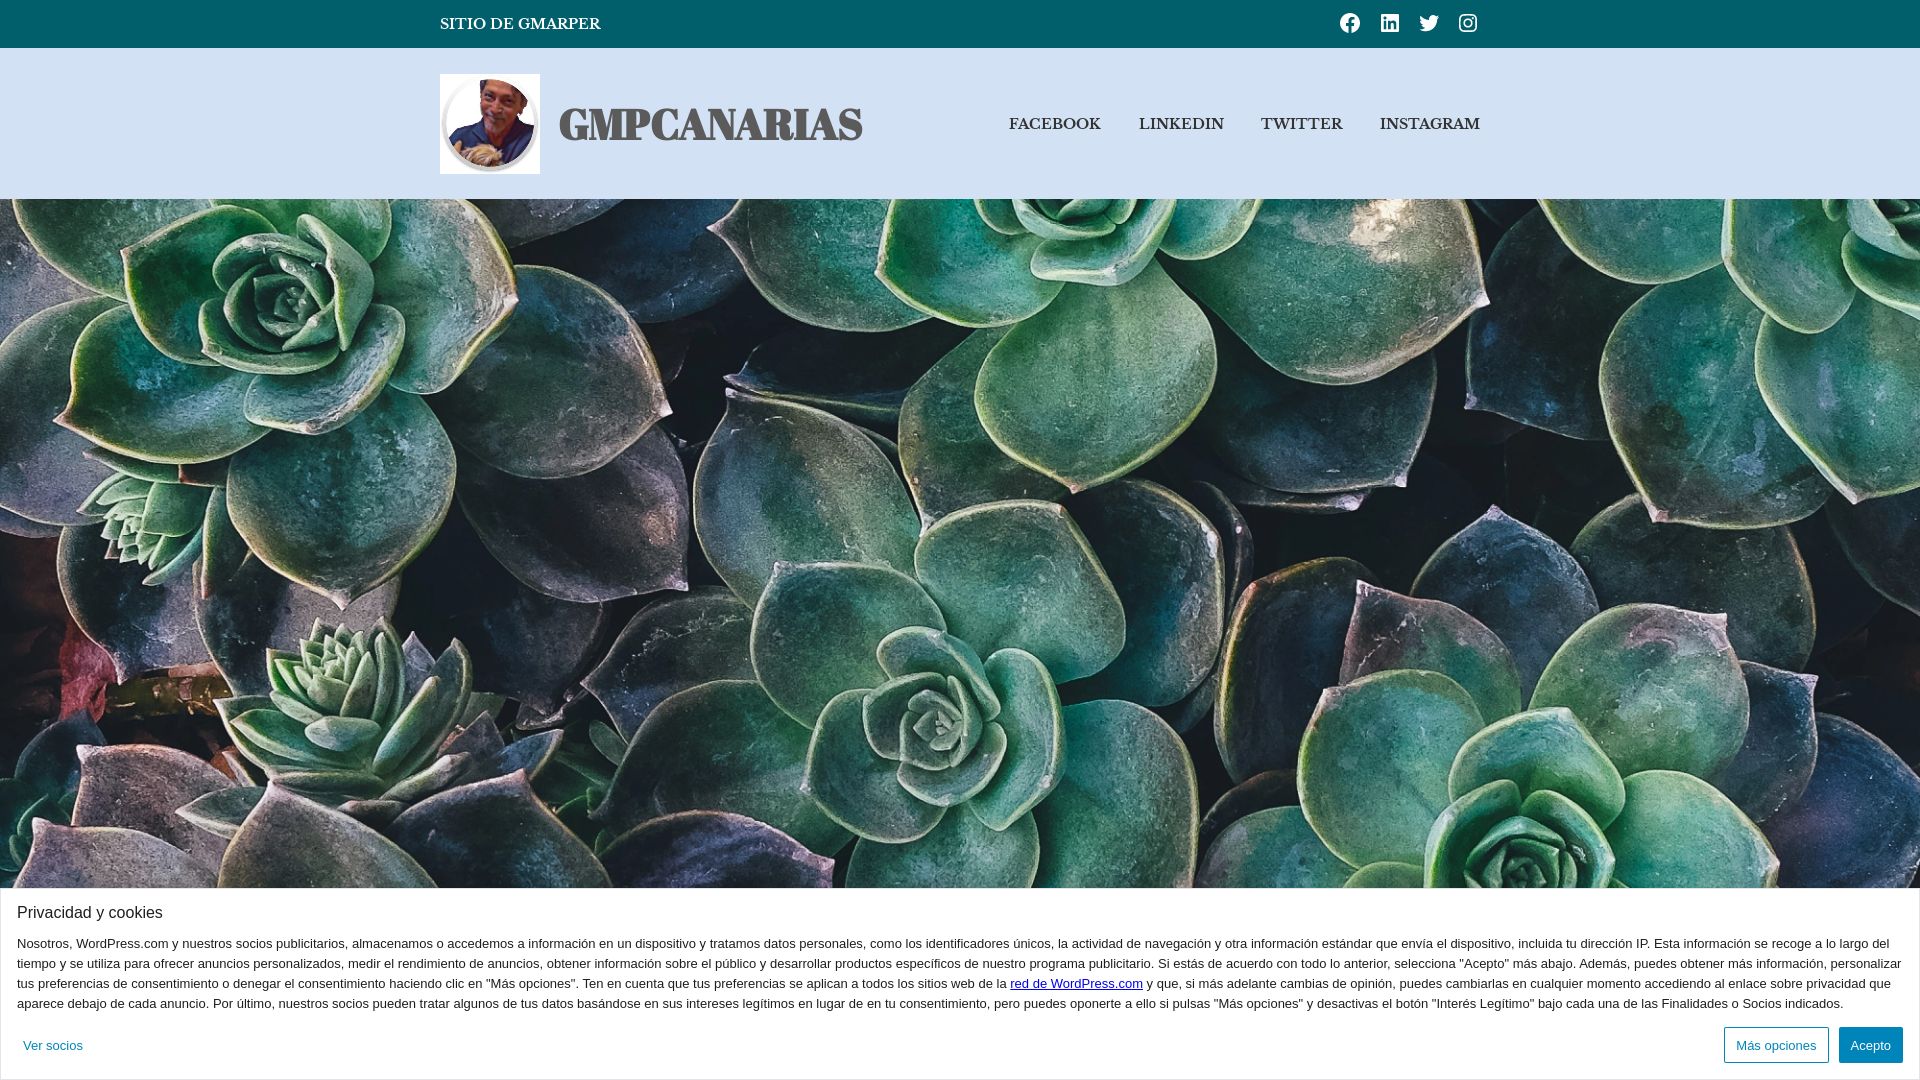 Estado web gmpcanarias.wordpress.com está   ONLINE